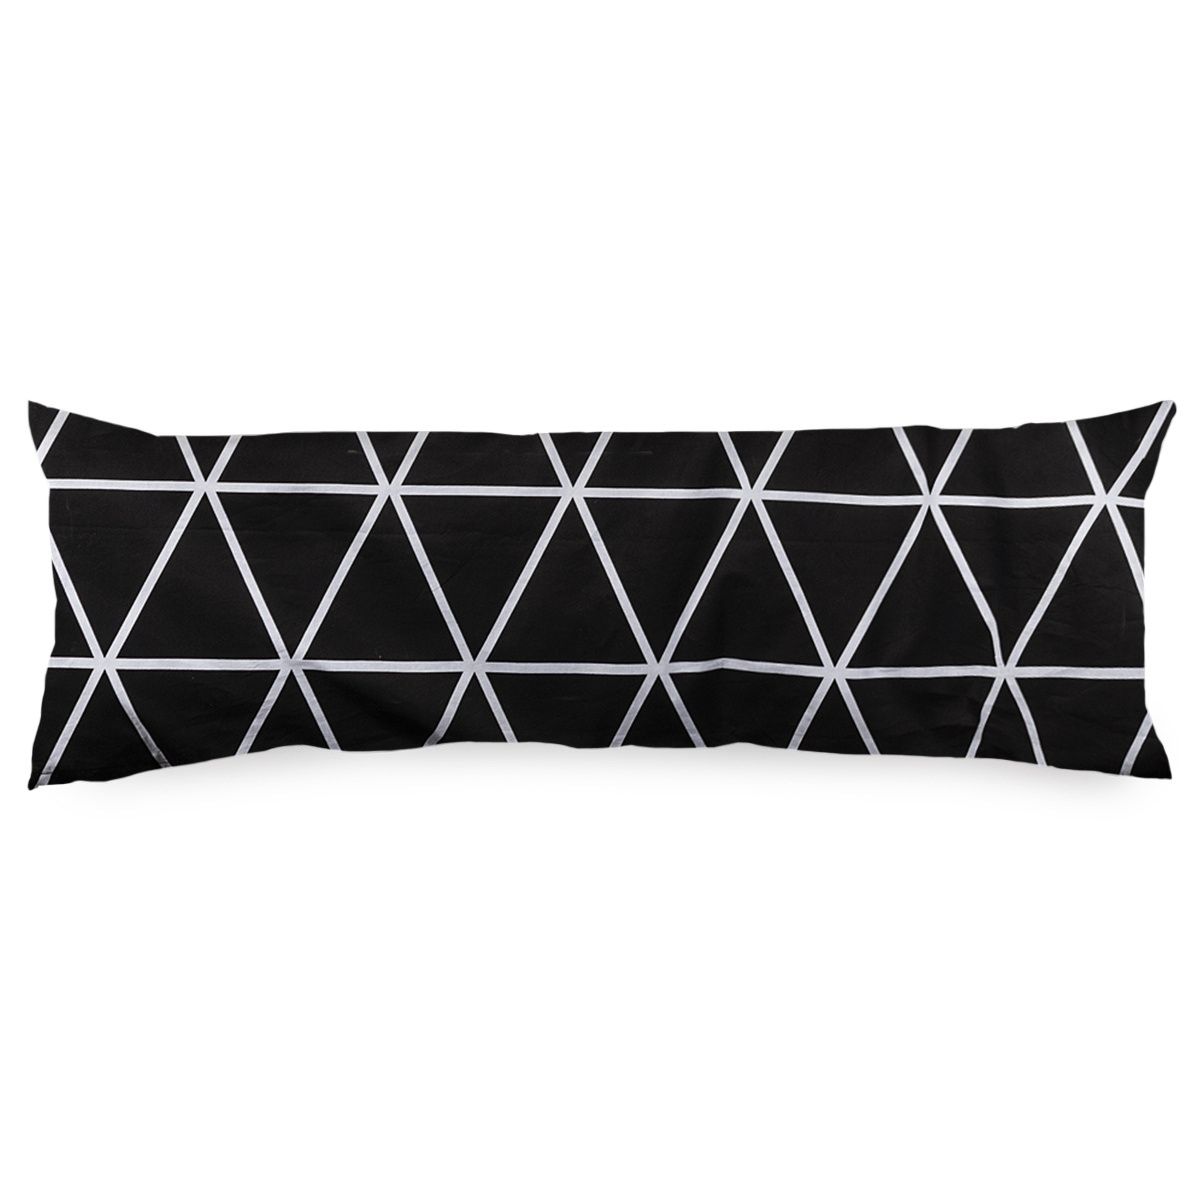 4Home Povlak na Relaxační polštář Náhradní manžel Galaxy černobílá, 50 x 150 cm - 4home.cz